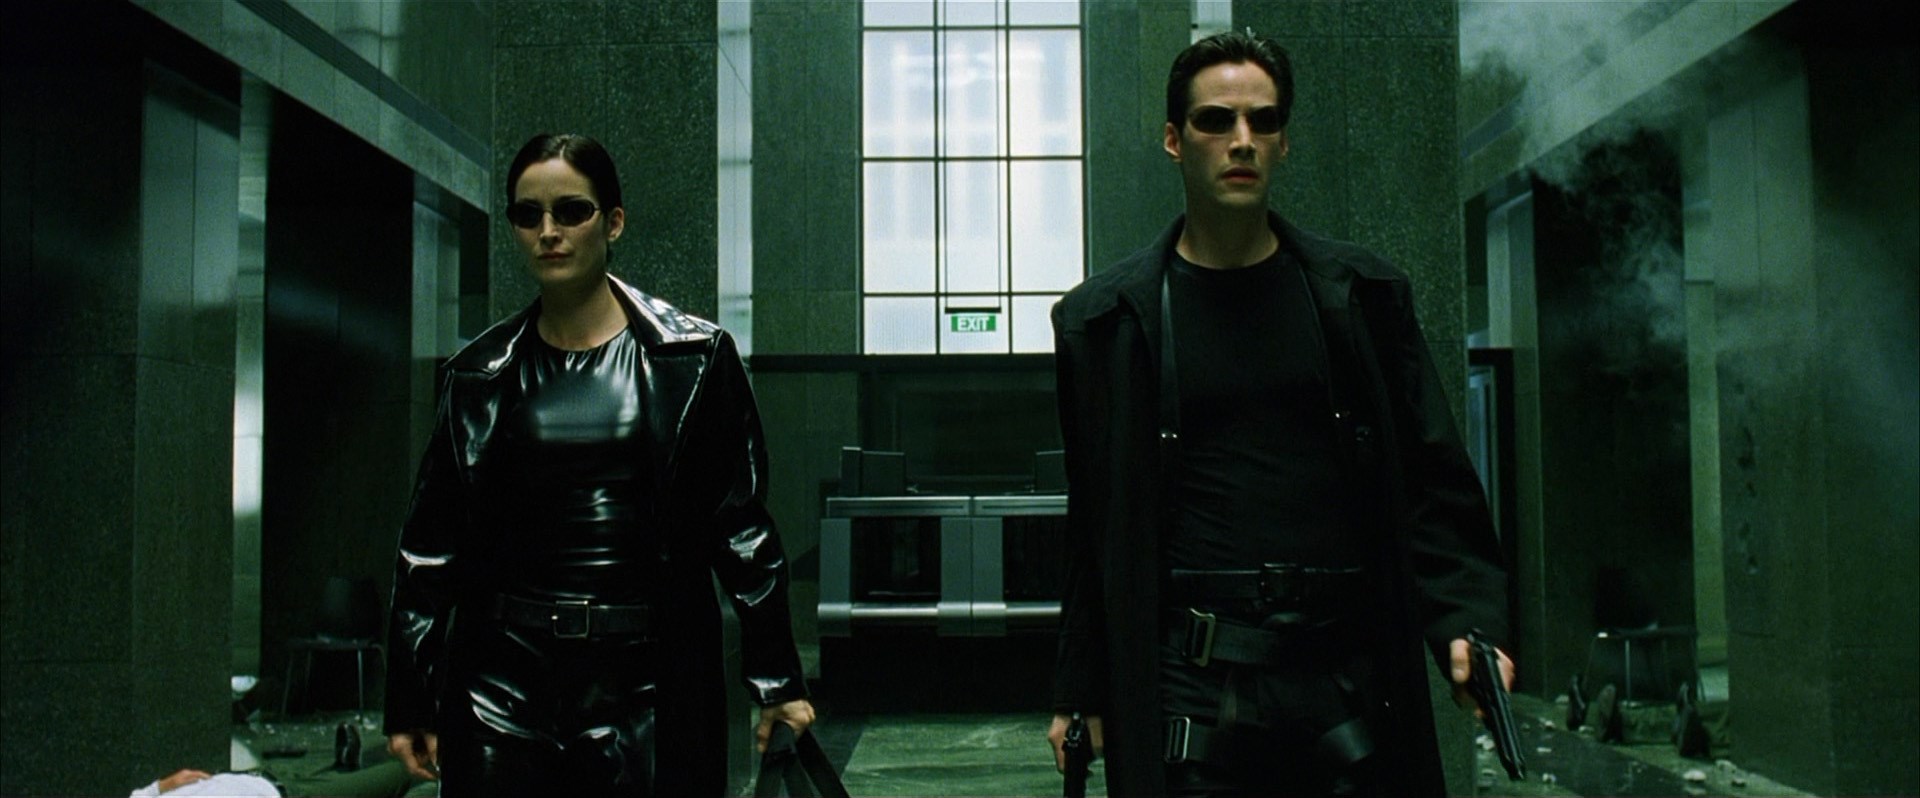 İlk Matrix filmi 22 yıl sonra yeniden vizyona girecek